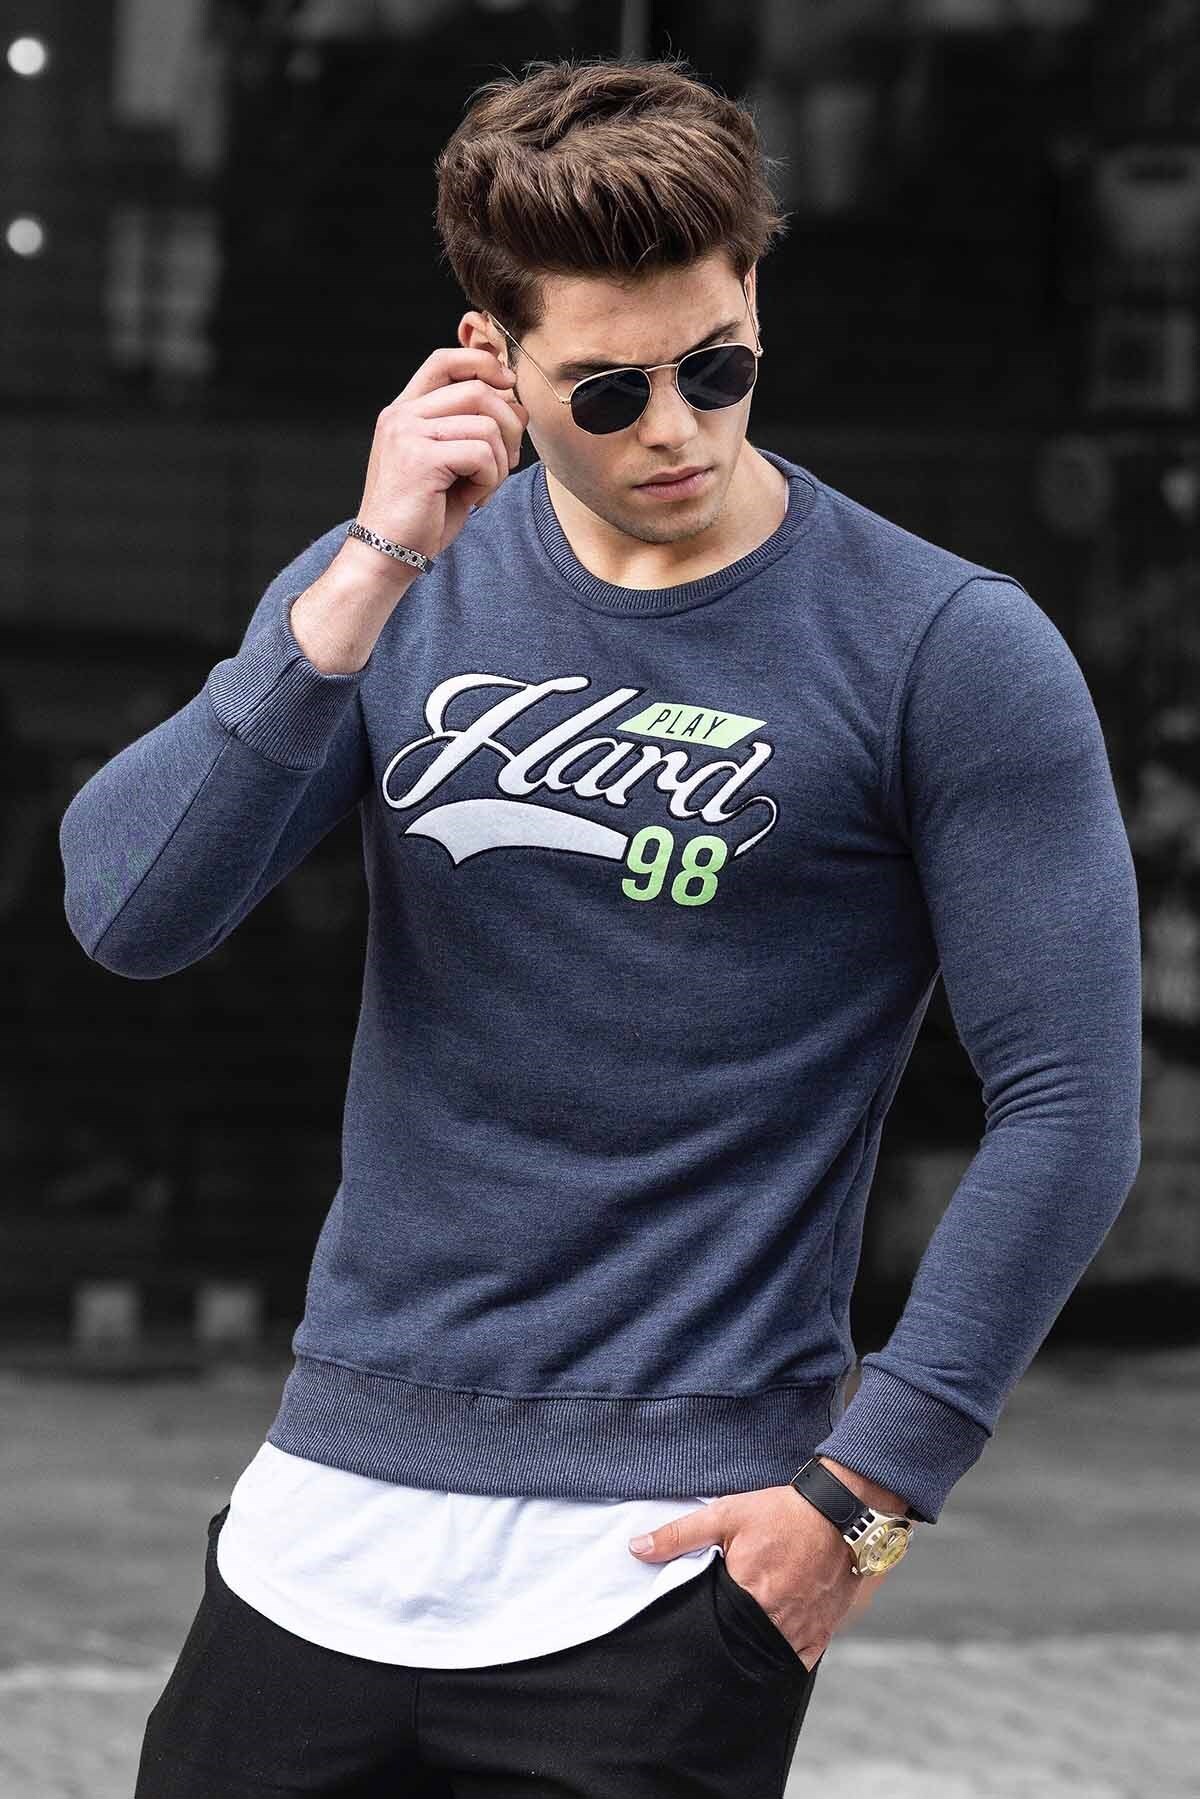 Madmext Men's Printed Navy Sweatshirt 4375